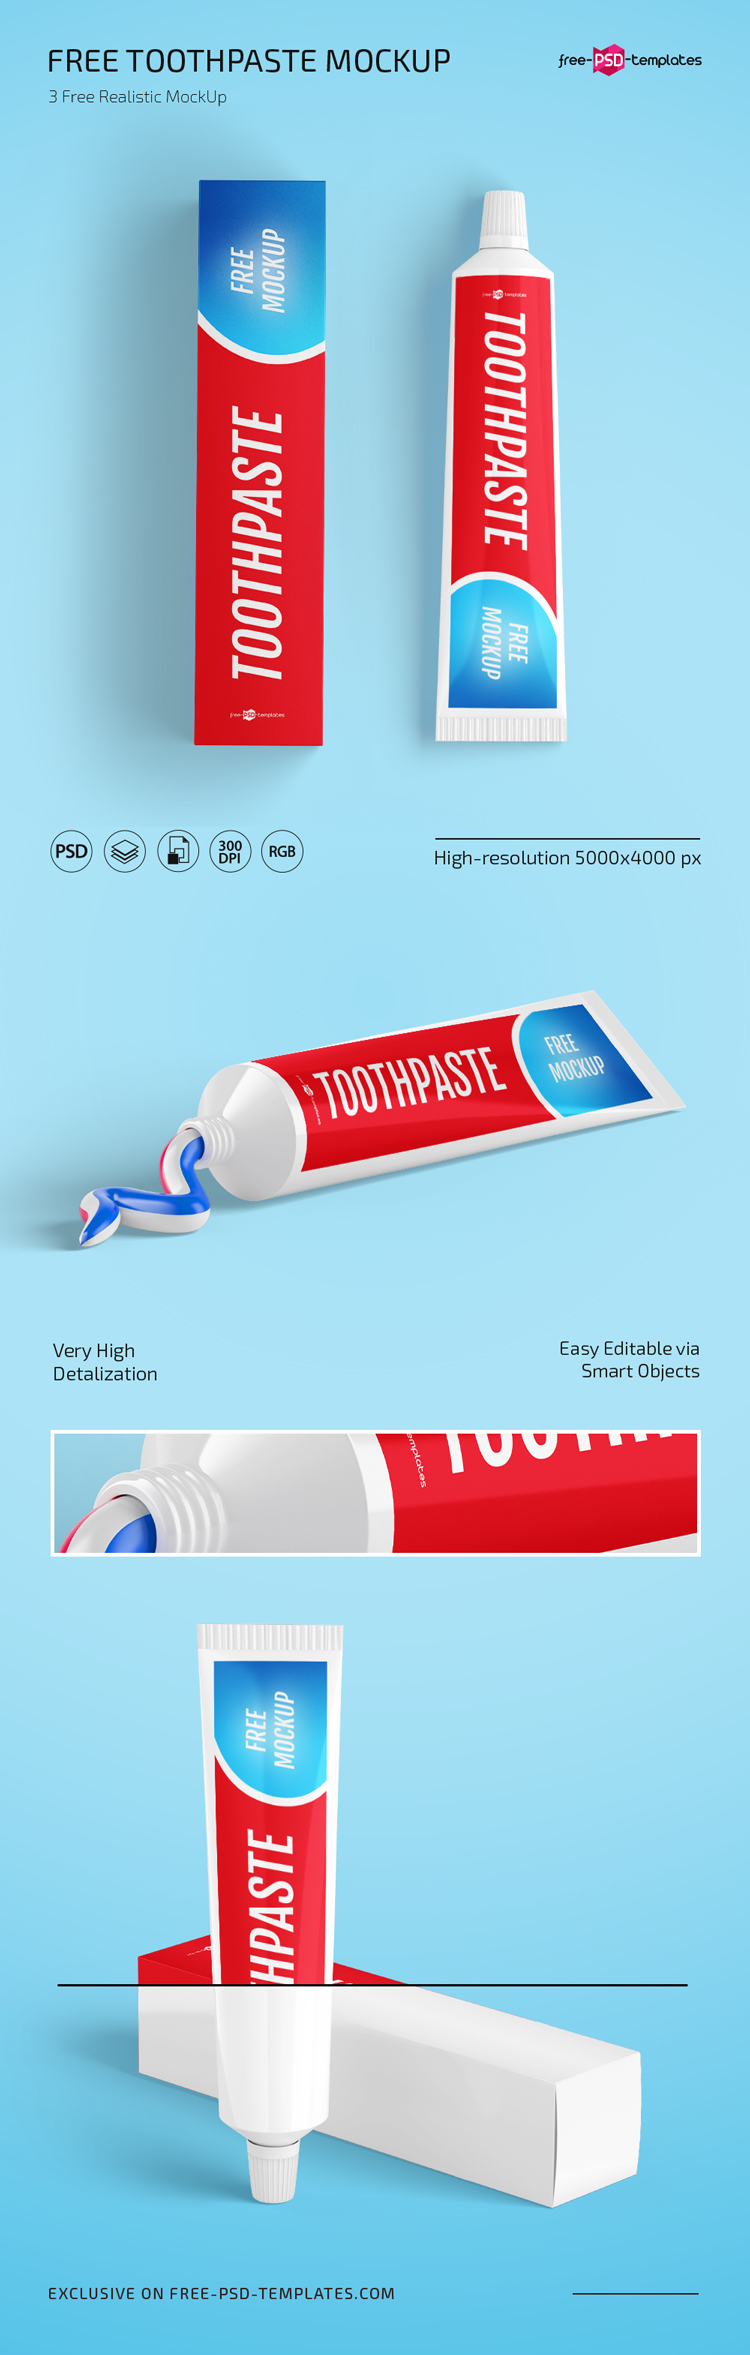 免费牙膏实物模型